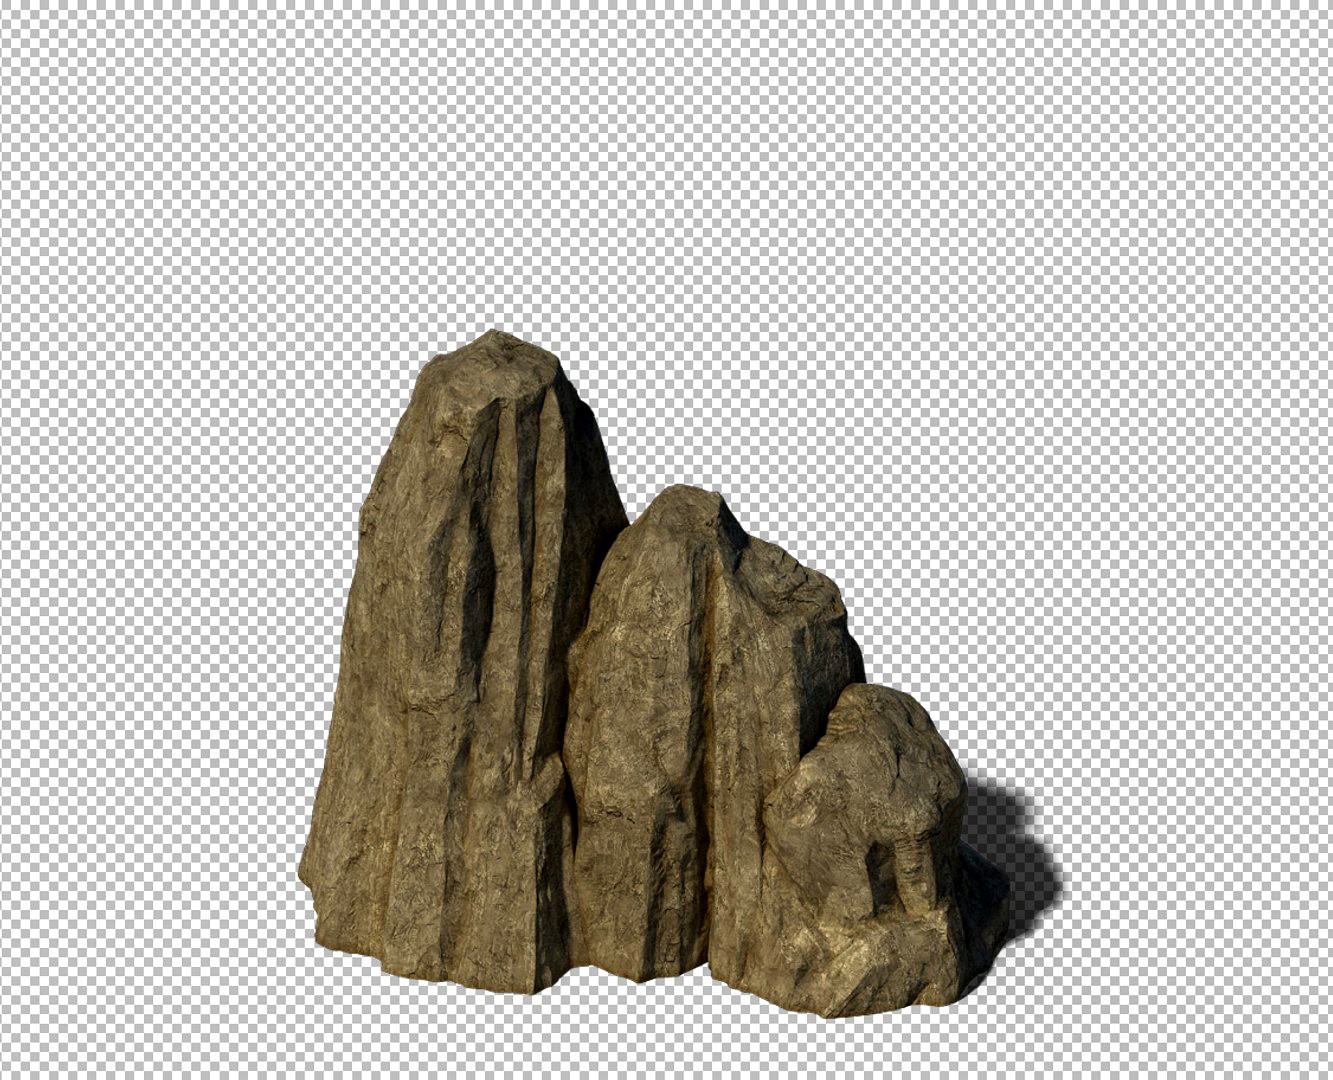 rocks 3D model 102